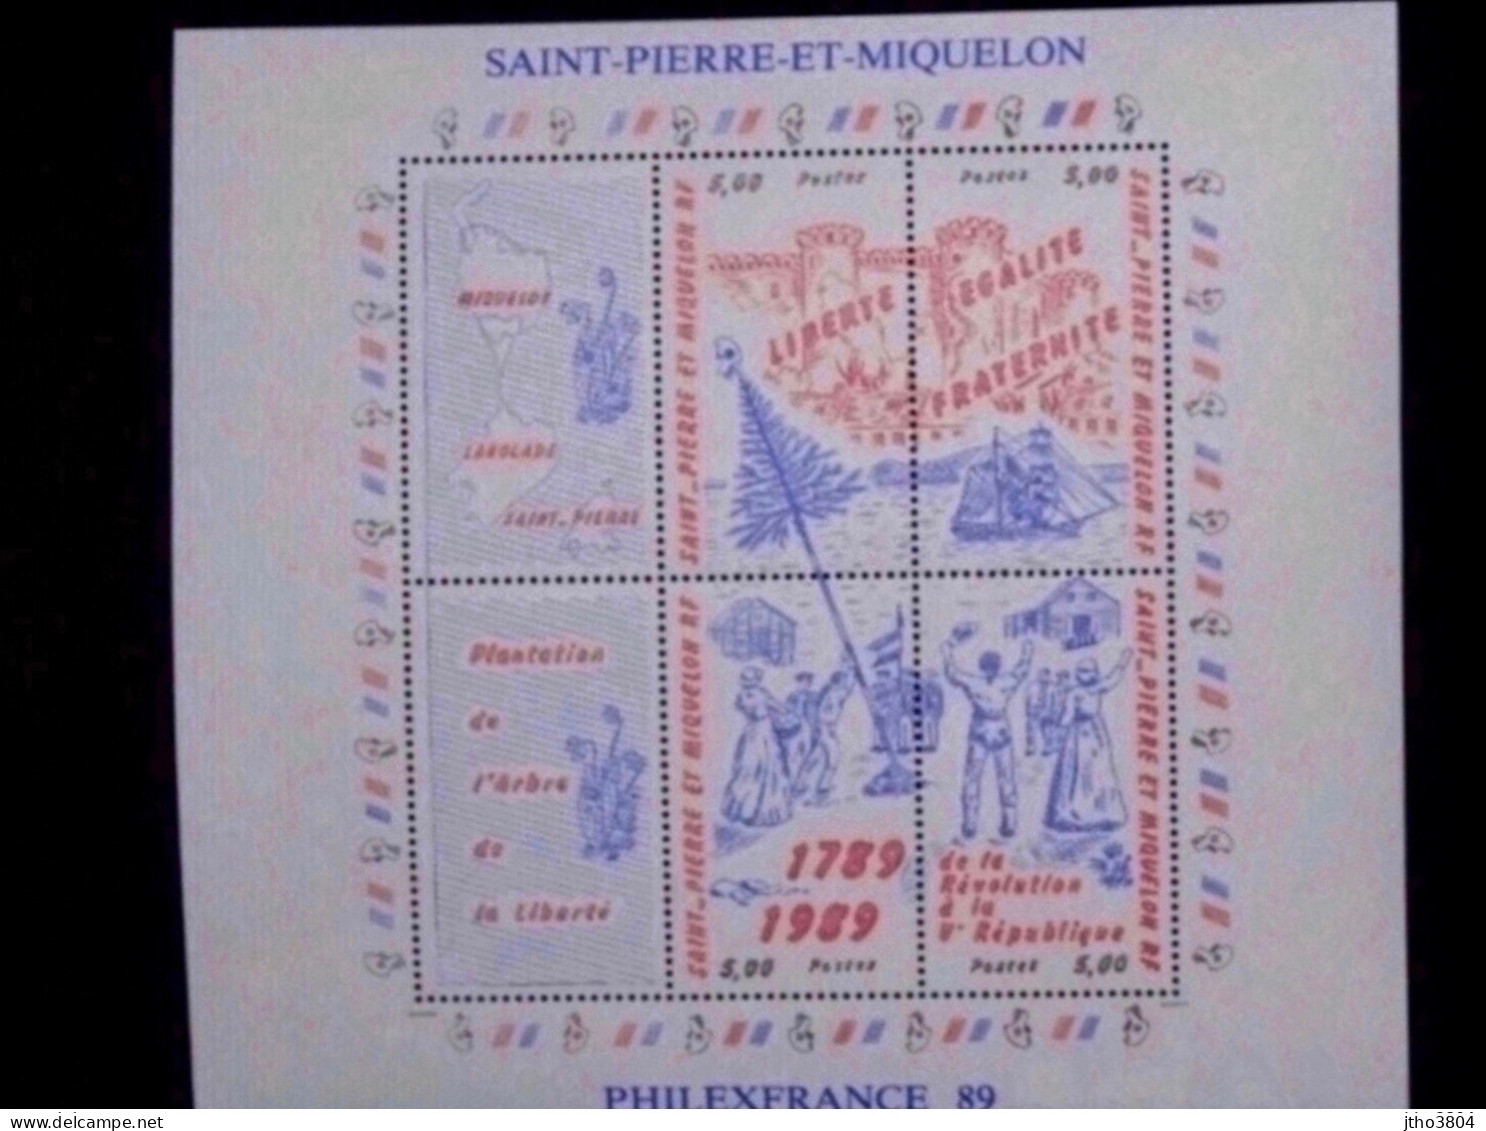 Saint Pierre Et Miquelon -Philexfrance 89 - Bloc 3 Révolution Française - BF3 - Neufs